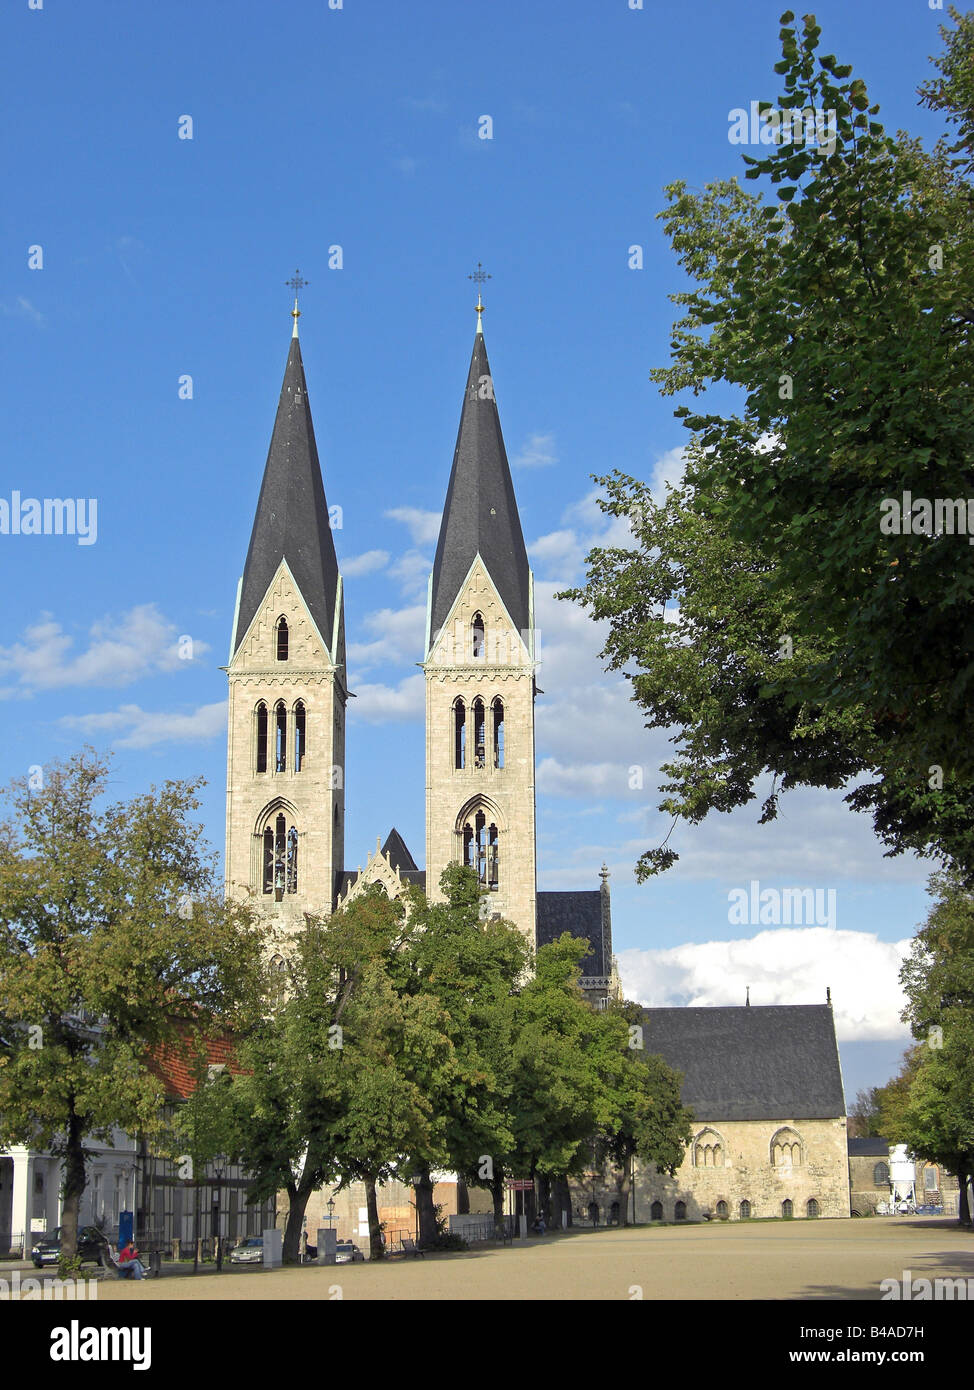 Geographie/Reisen, Deutschland, Sachsen-Anhalt, Halberstadt, Kirchen, Kathedrale, Außenansicht, Additional-Rights - Clearance-Info - Not-Available Stockfoto